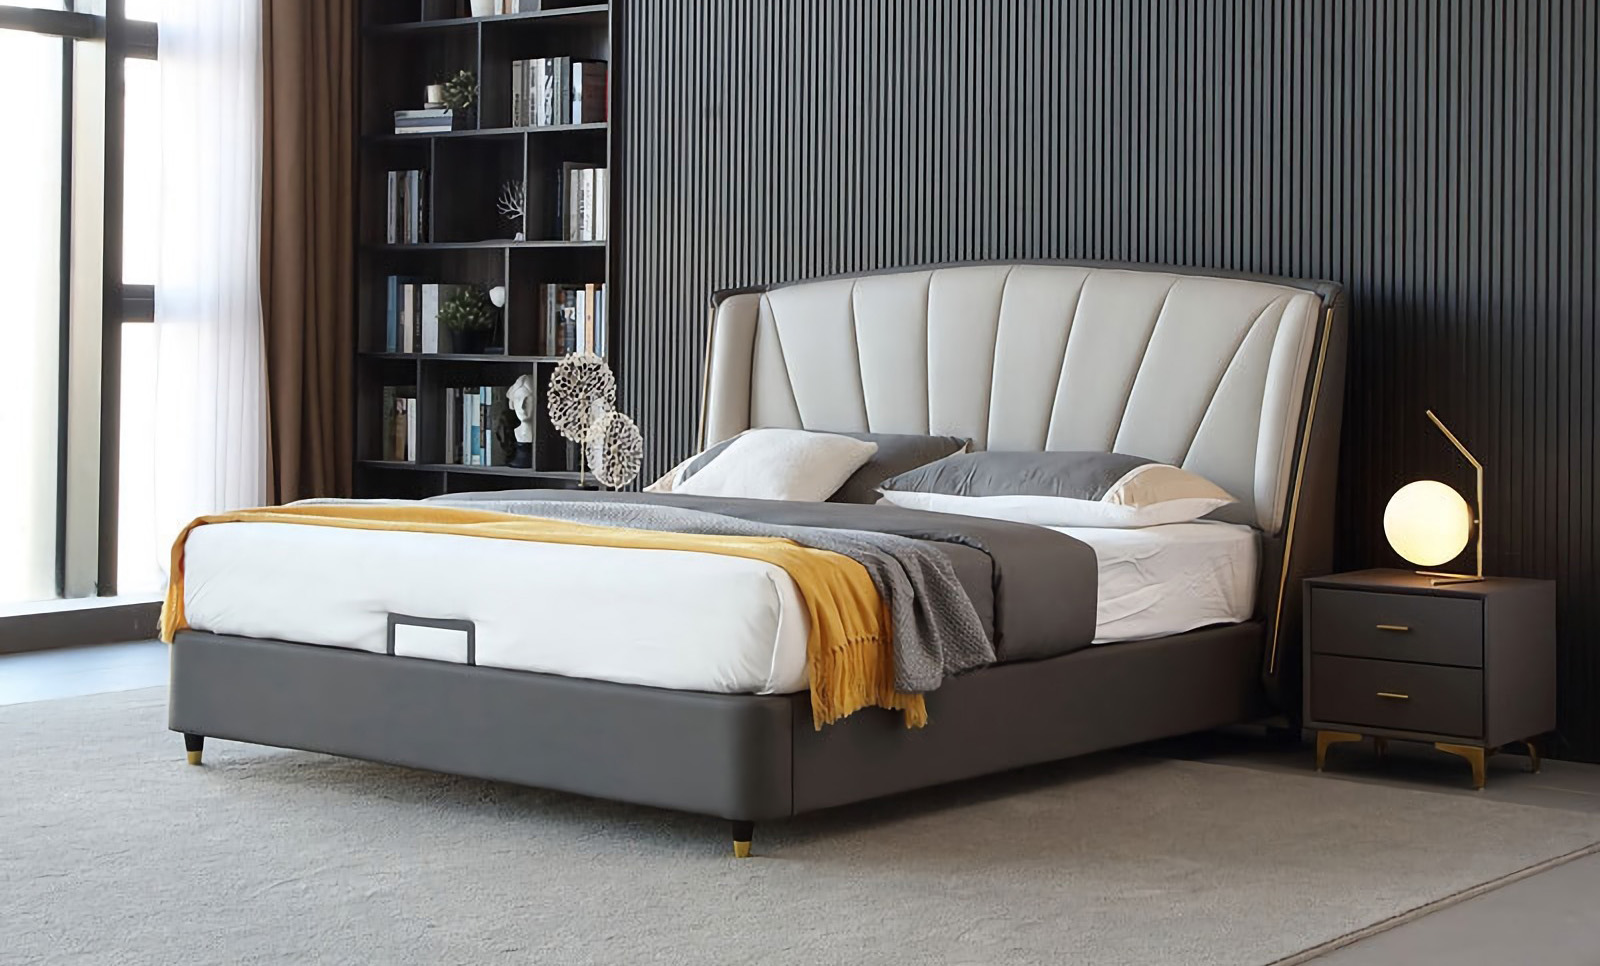 Đặc điểm thiết kế giường tối giản hiện đại của giường tối giản hiện đại.